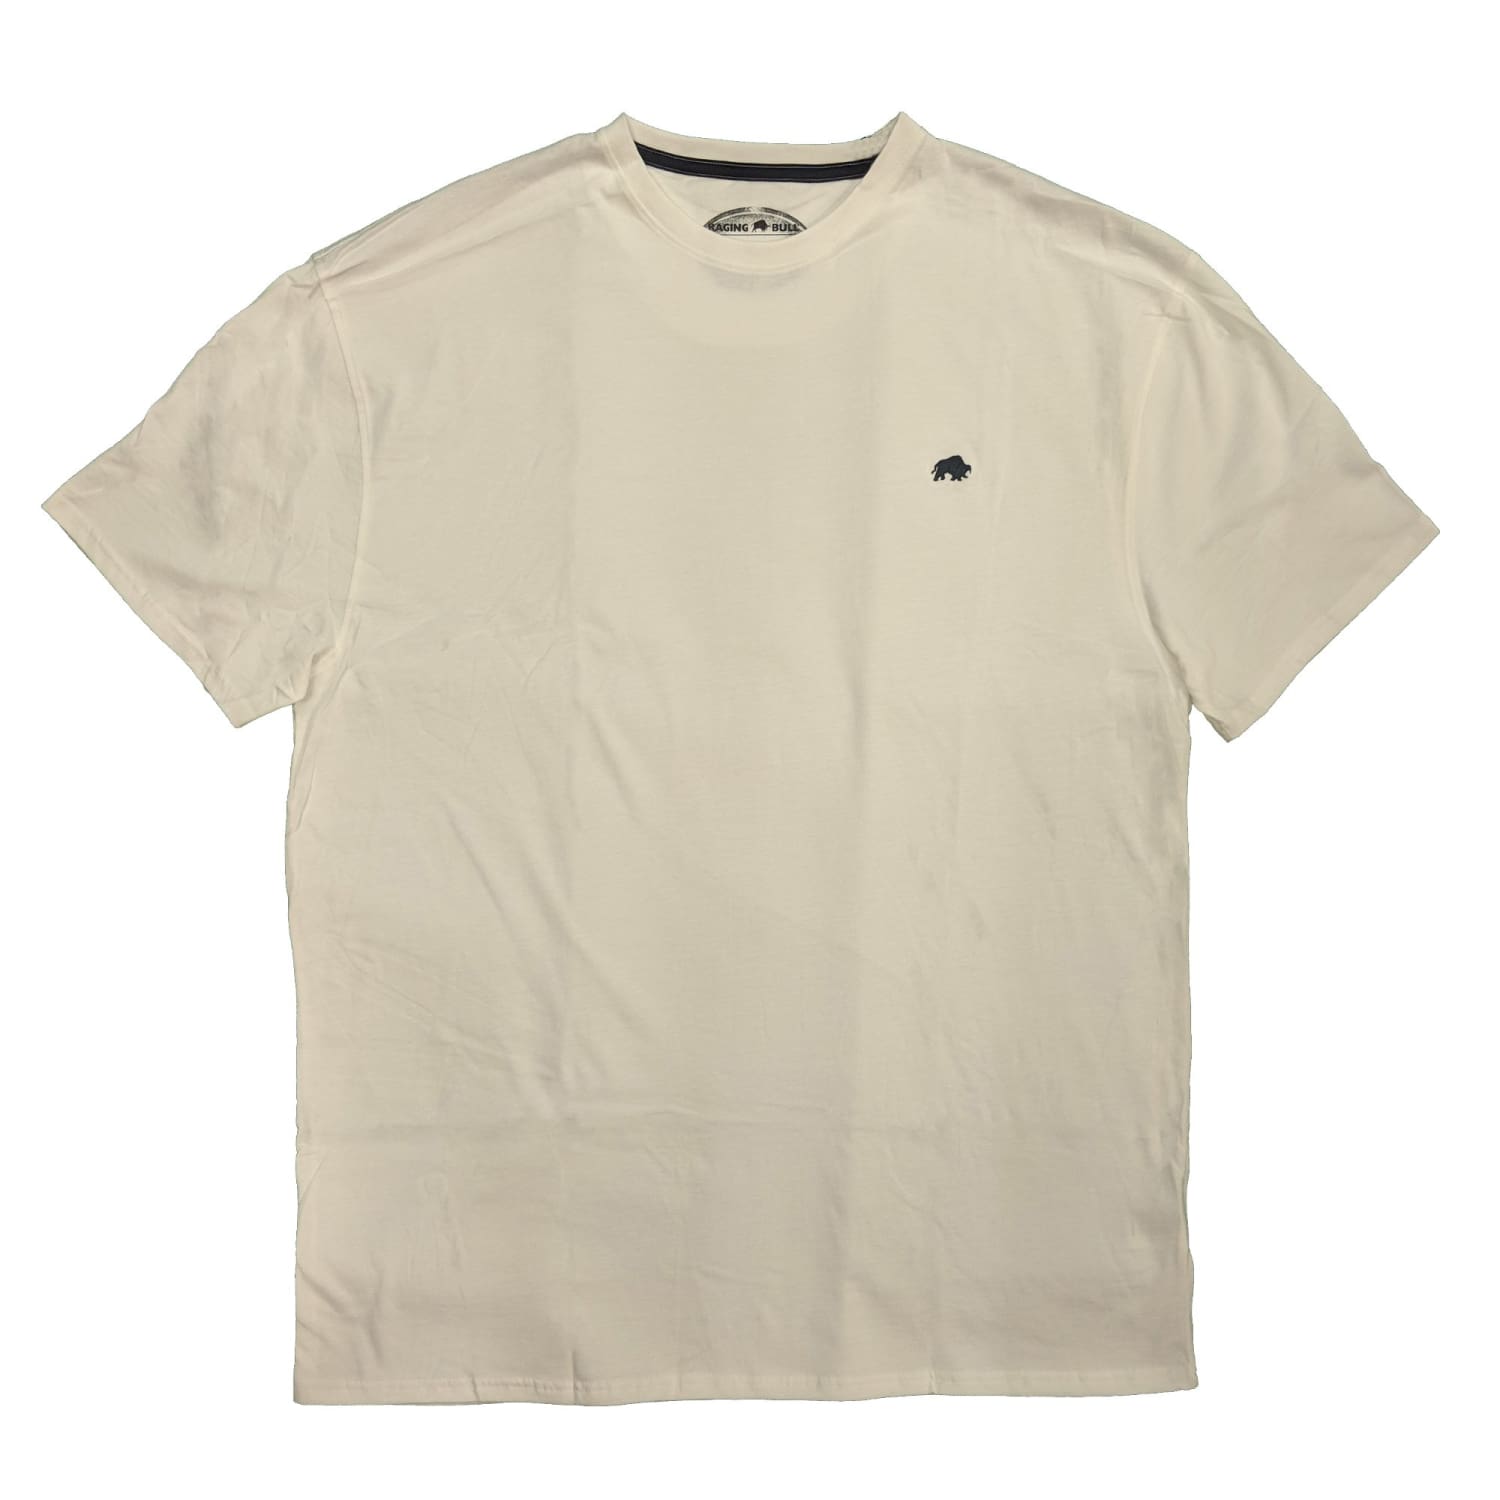 Raging Bull T-Shirt - Signature Tee - RB0TS01 - White 1